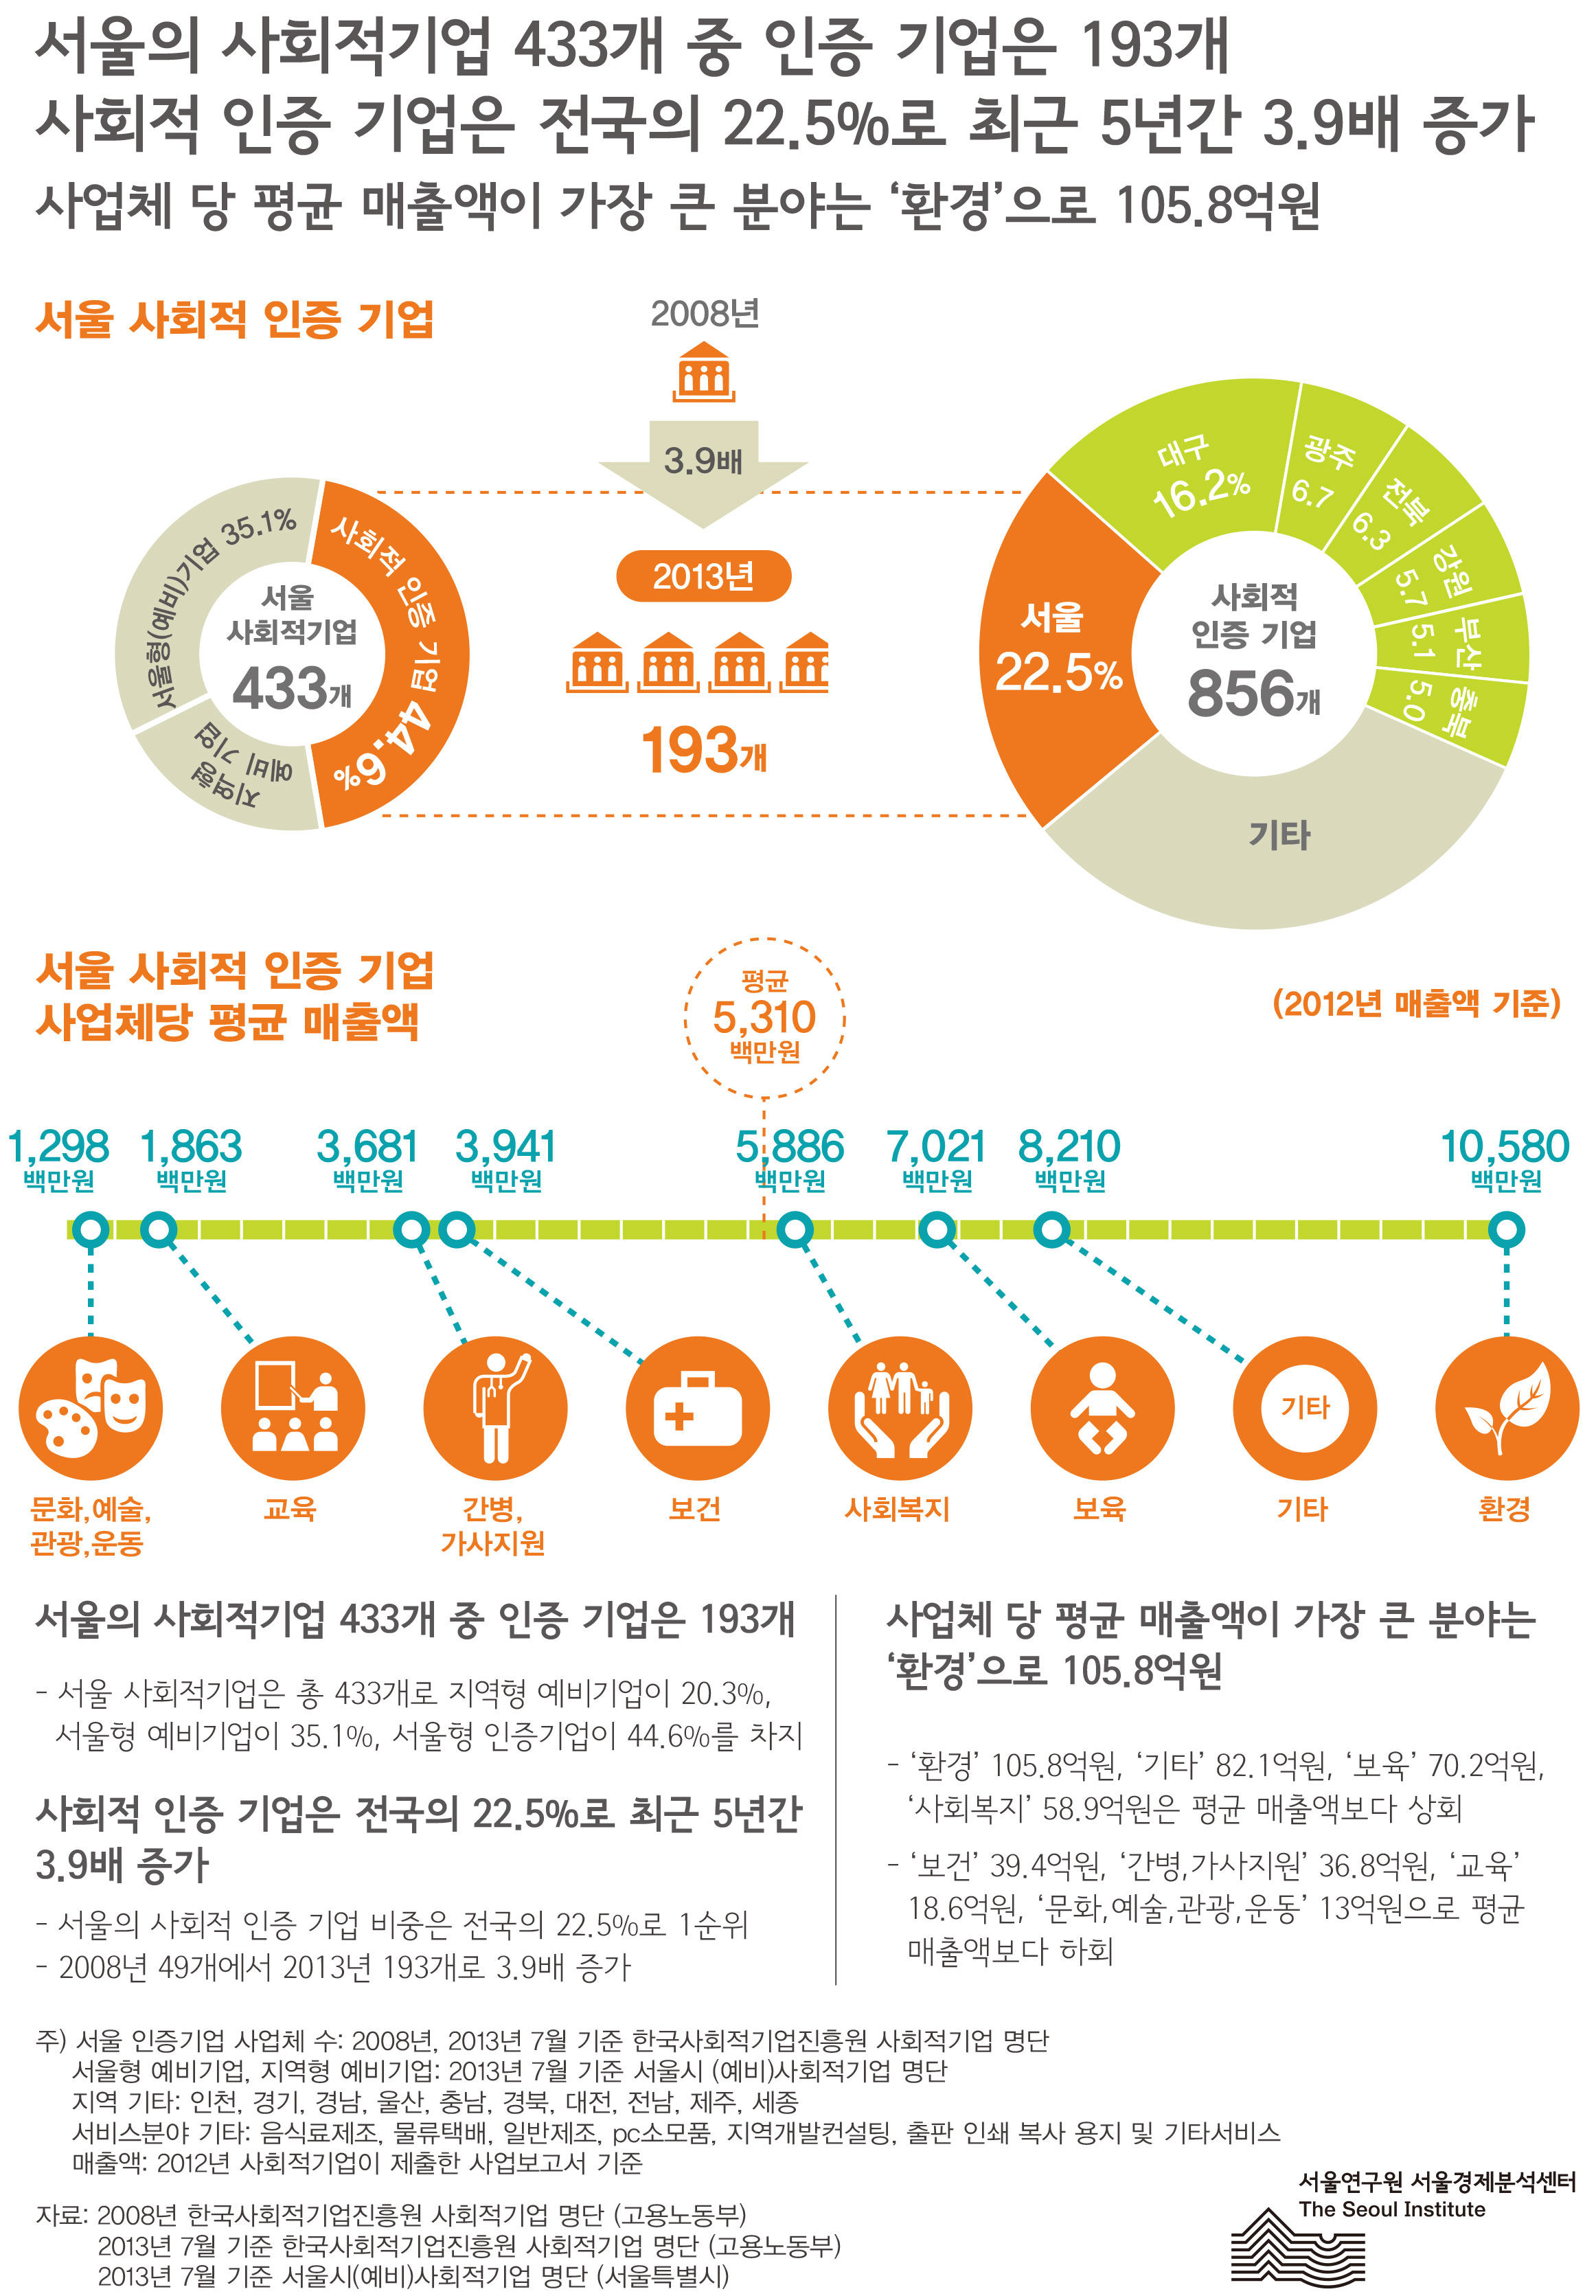 서울 사회적 기업 서울인포그래픽스 제54호 2013년 9월 30일 서울의 사회적기업 433개 중 인증 기업은 193개, 사회적 인증 기업은 전국의 22.5%로 최근 5년간 3.9배 증가함, 사업체 당 평균 매출액이 가장 큰 분야는 ‘환경’으로 105.8억원으로 조사됨으로 정리될 수 있습니다. 인포그래픽으로 제공되는 그래픽은 하단에 표로 자세히 제공됩니다.